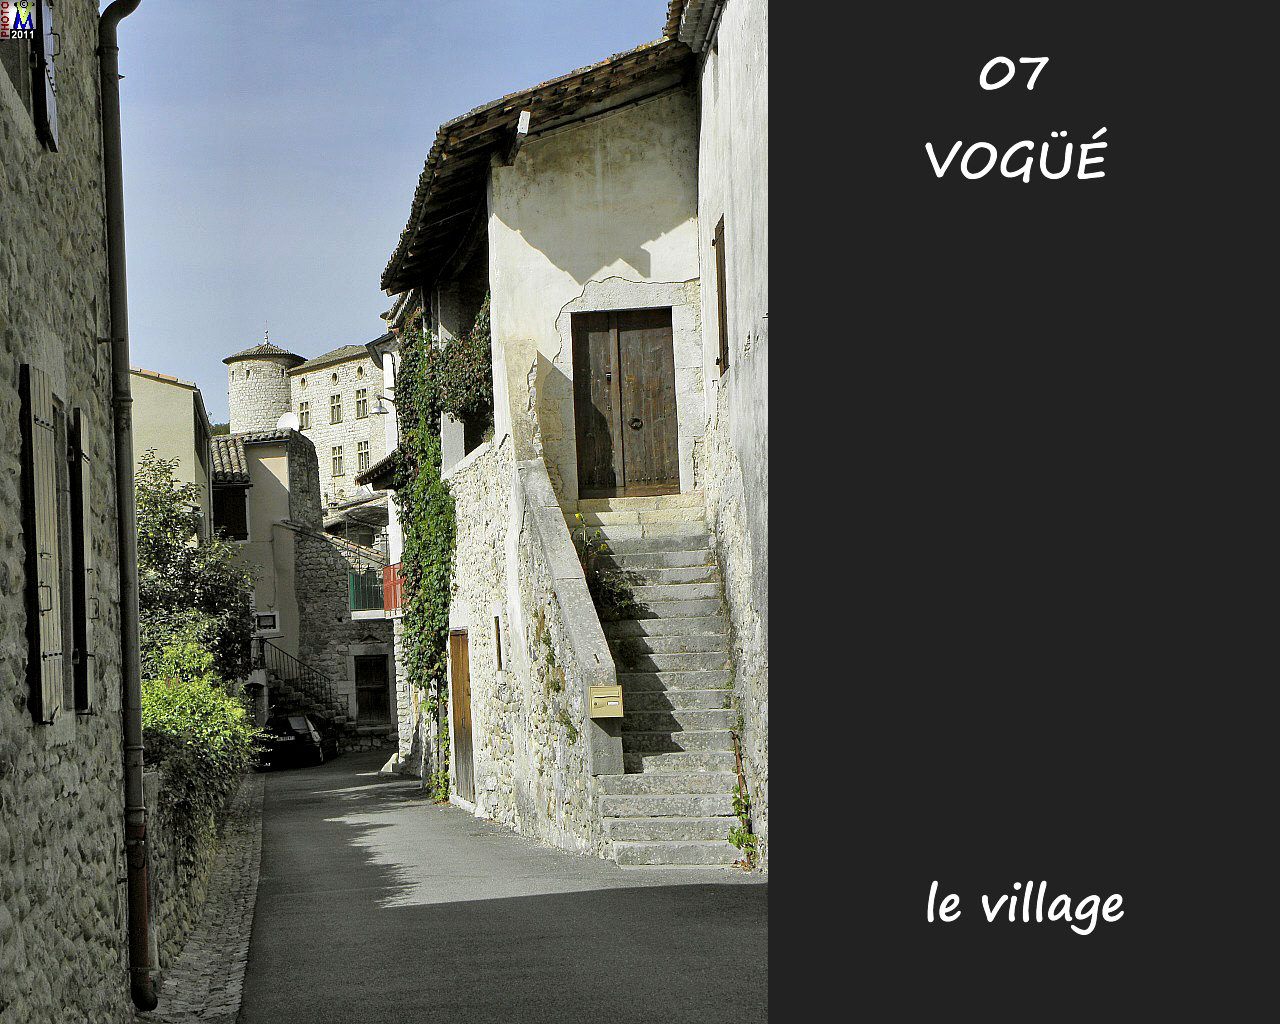 07VOGUE_village_116.jpg